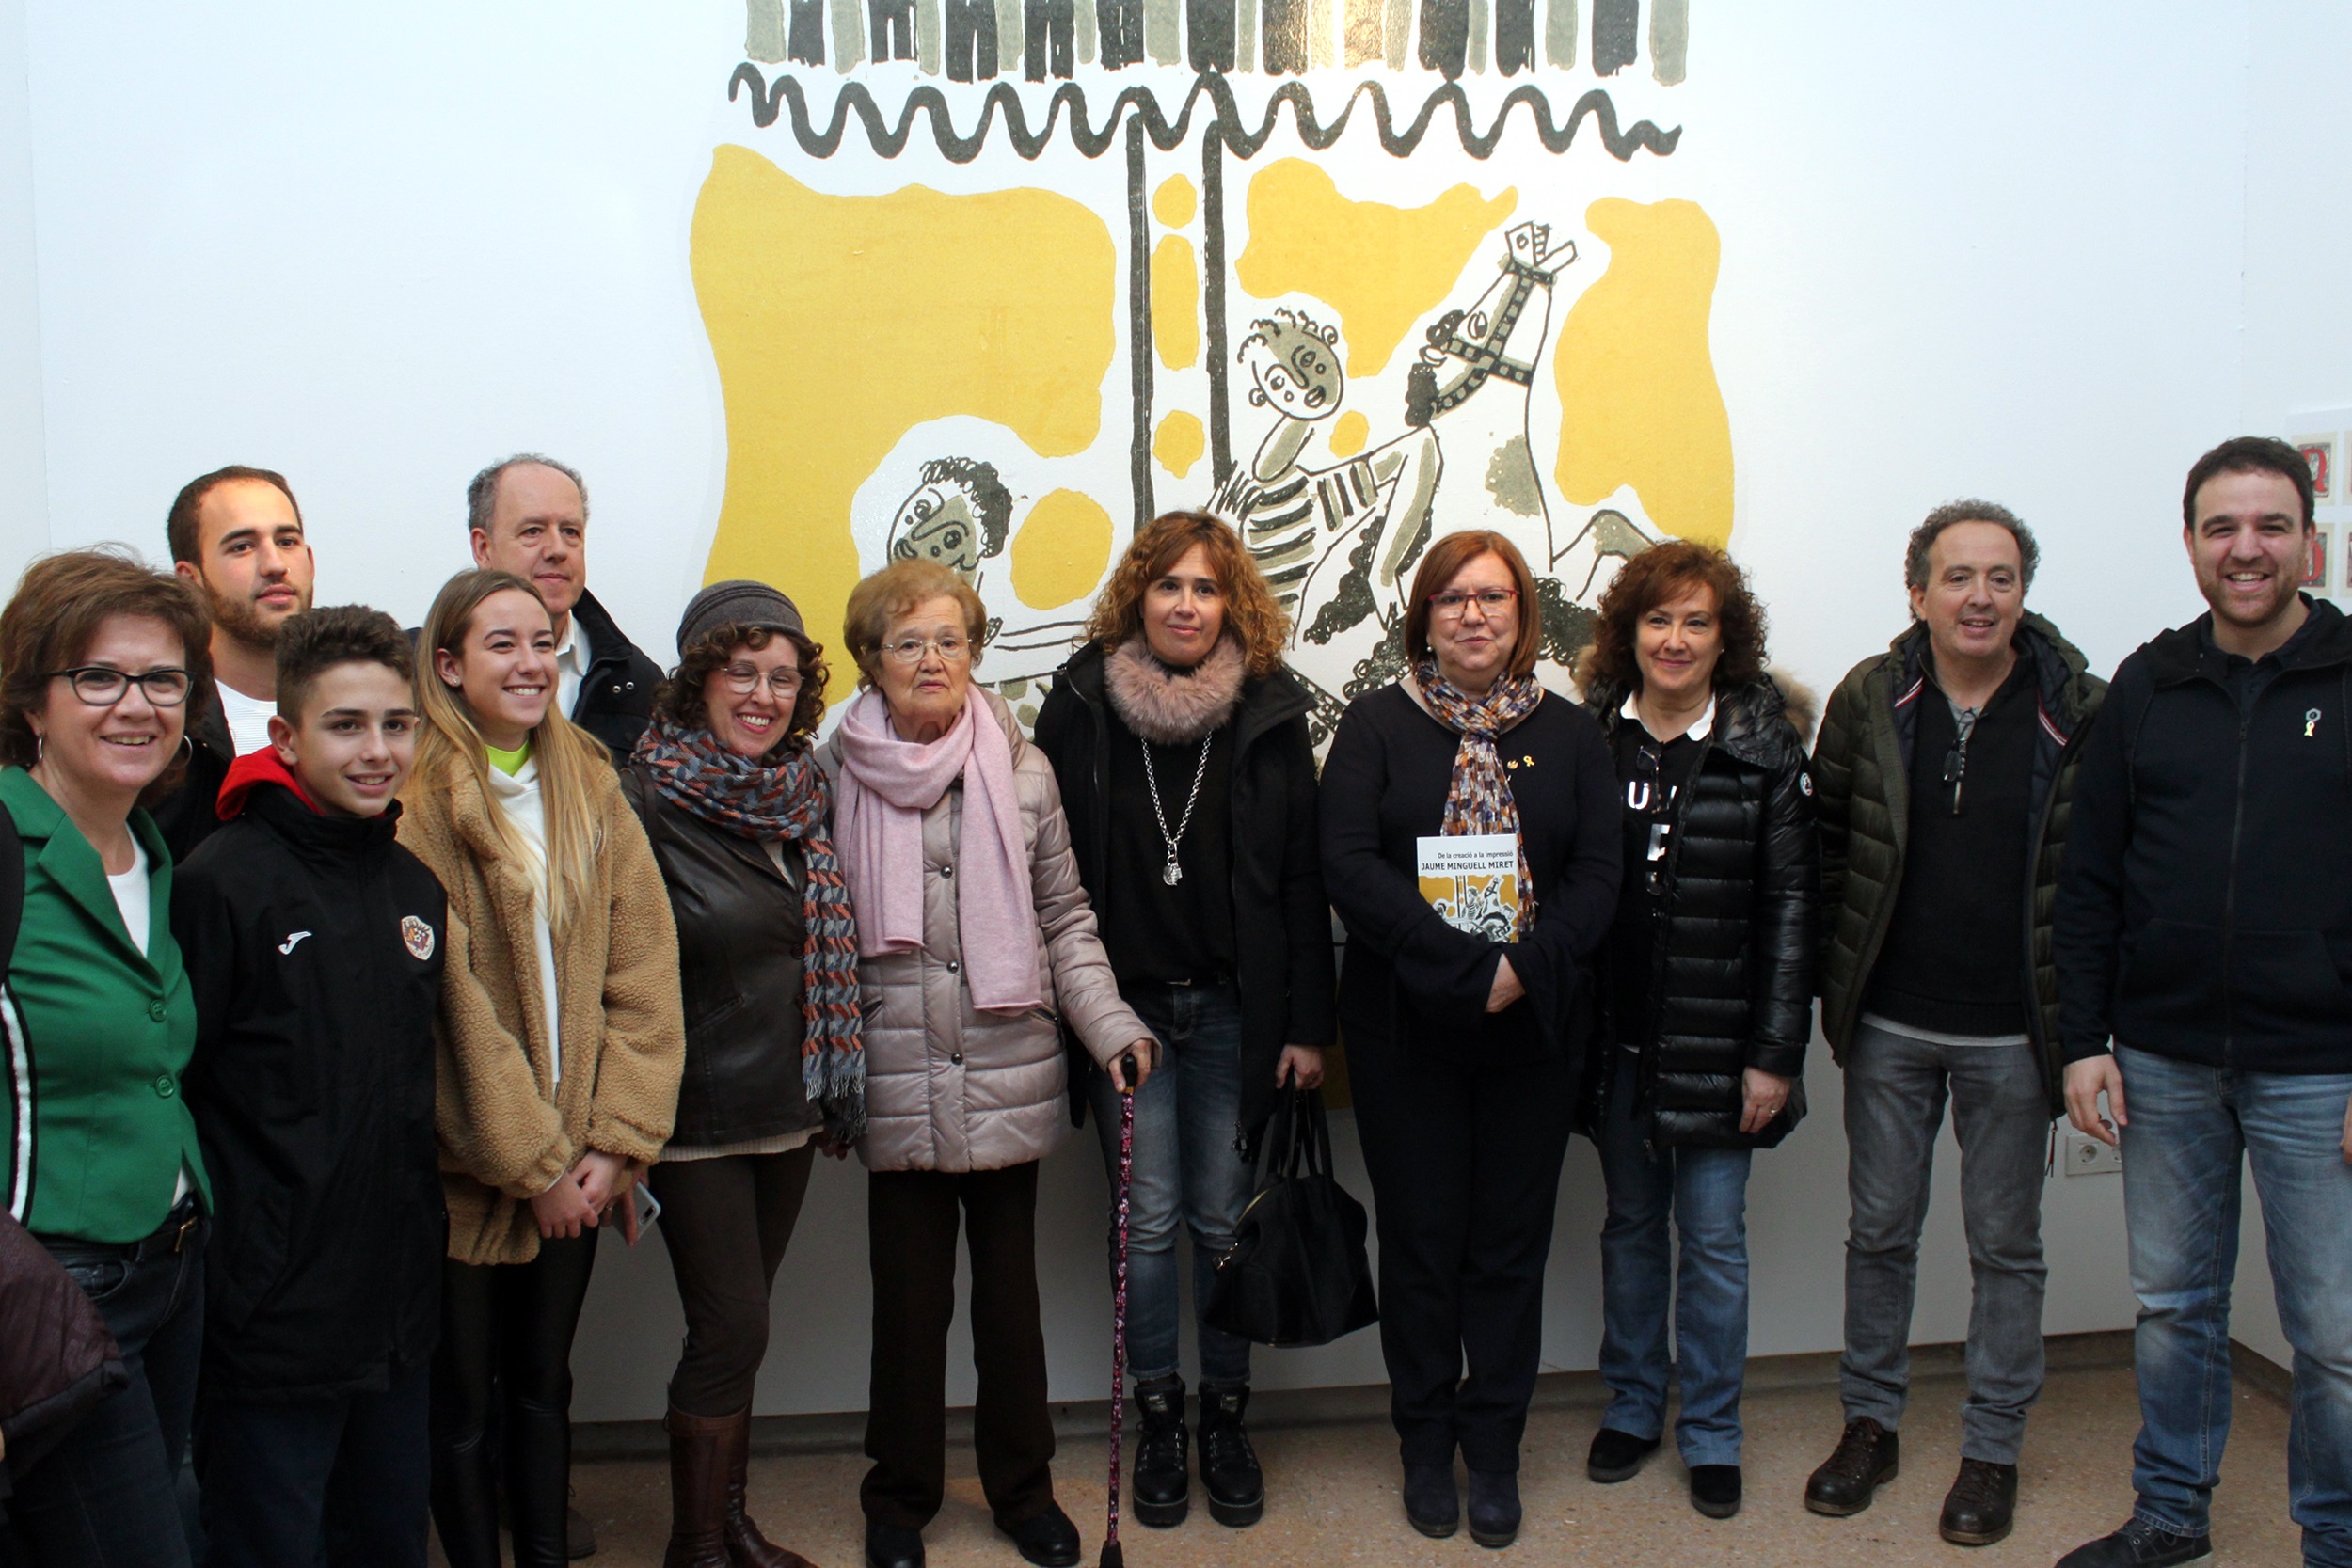 La Sala Marsà acull una exposició sobre el vessant com a il•lustrador de l’artista Jaume Minguell